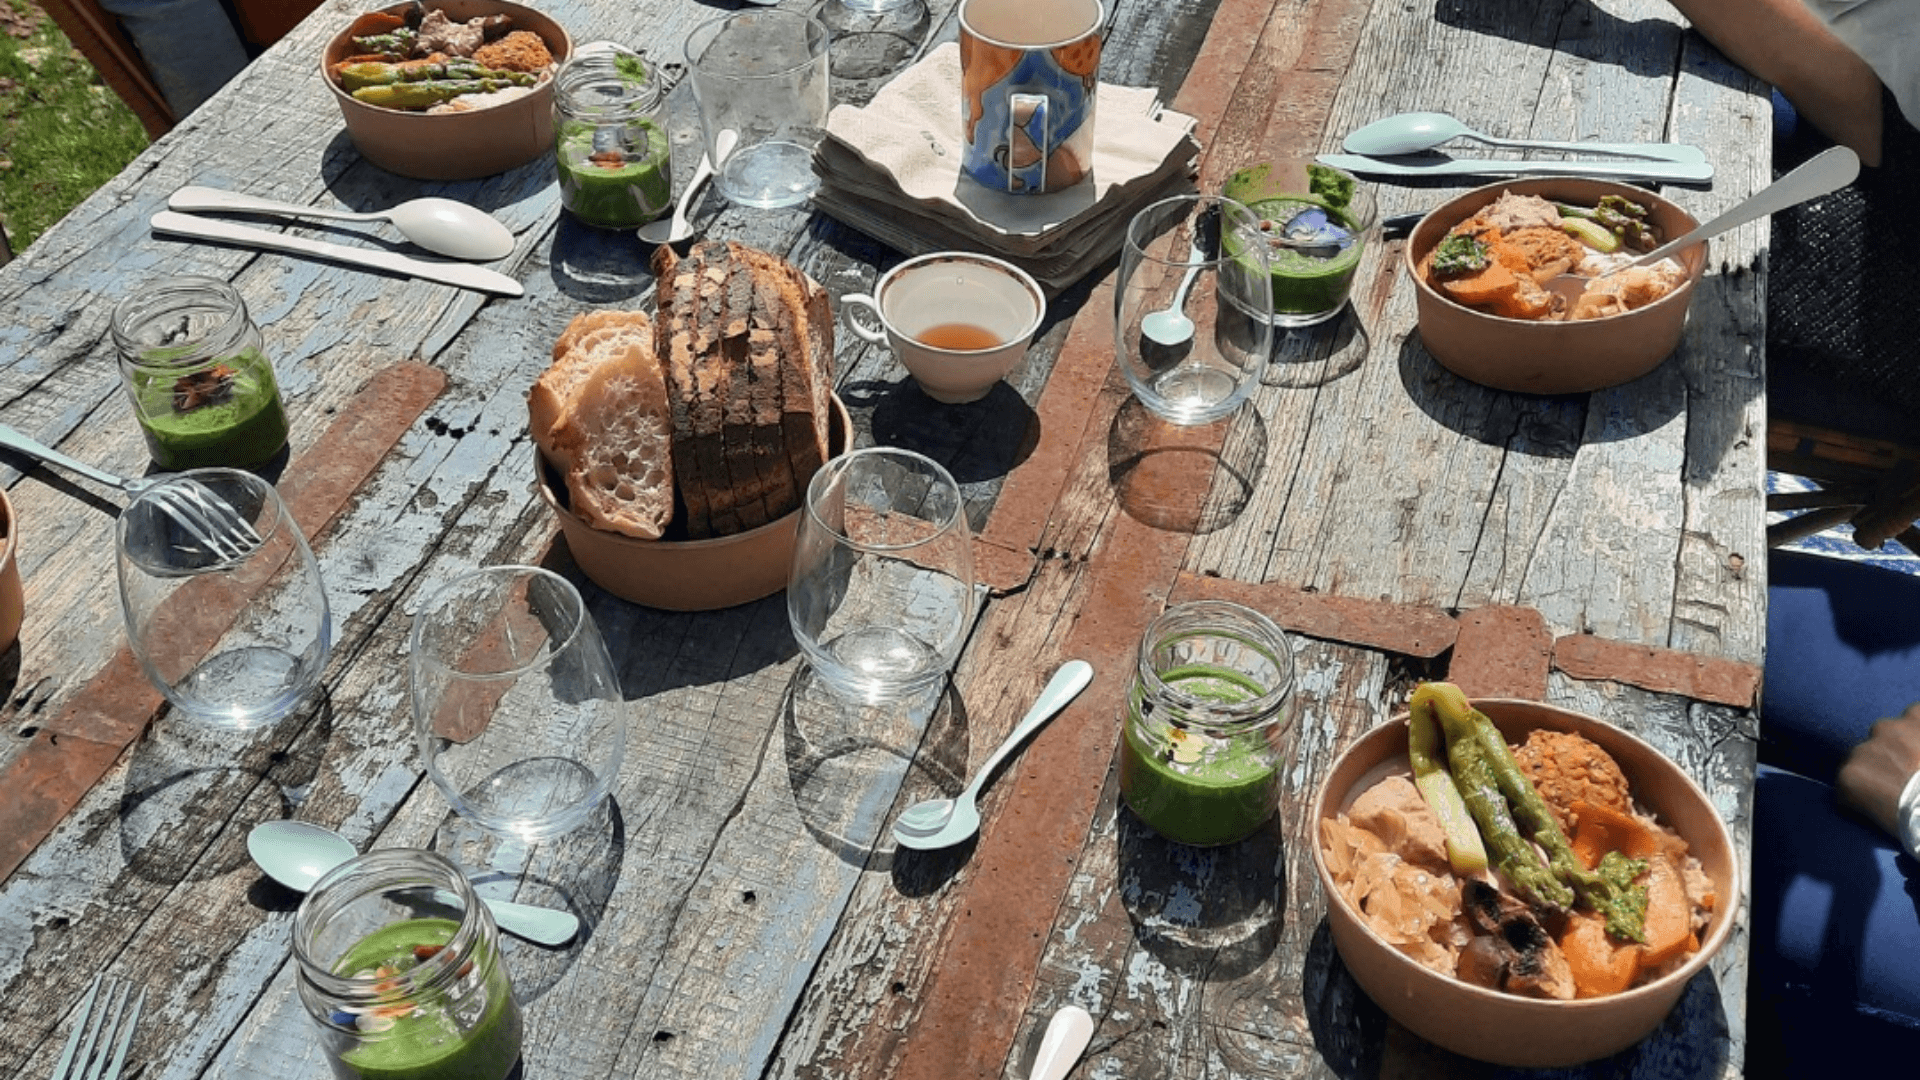 Plateaux repas traiteur posés sur une table au soleil